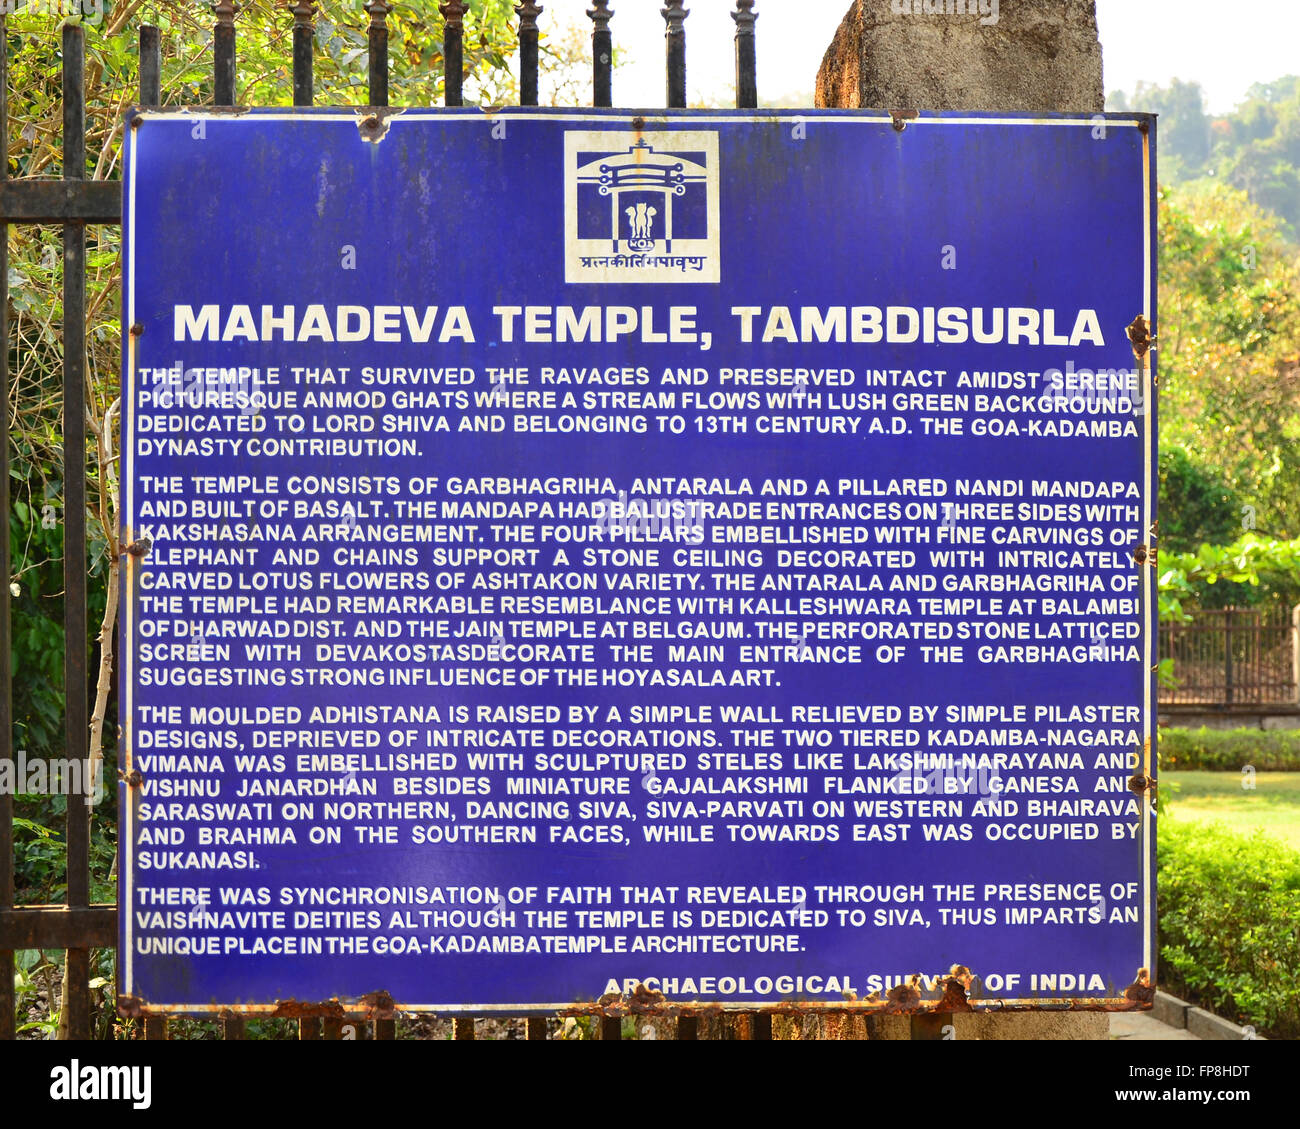 Archäologischer Survey of India-Board mit der Beschreibung des Mahadeva-Tempels in Tambdi Surla, Sanguem, Goa, Indien Stockfoto